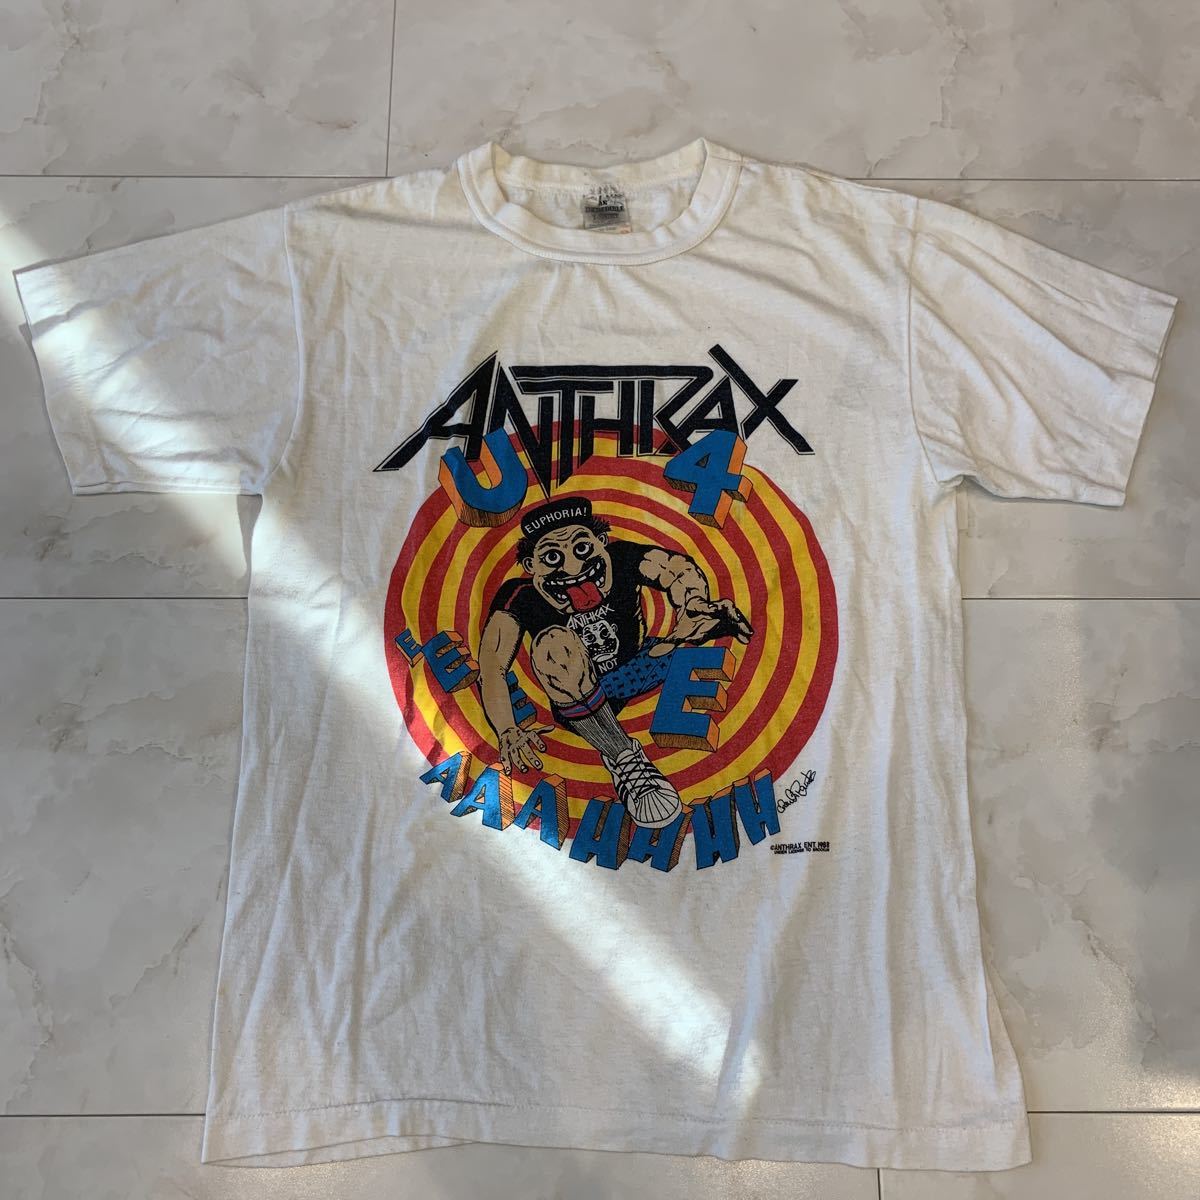 レア ビンテージ アンスラックス 1988 anthrax 白 バンド tシャツ lサイズ 古着 メタル ロックt 80s 90s METALLICA  当時 ハードロック 洋楽 洋楽